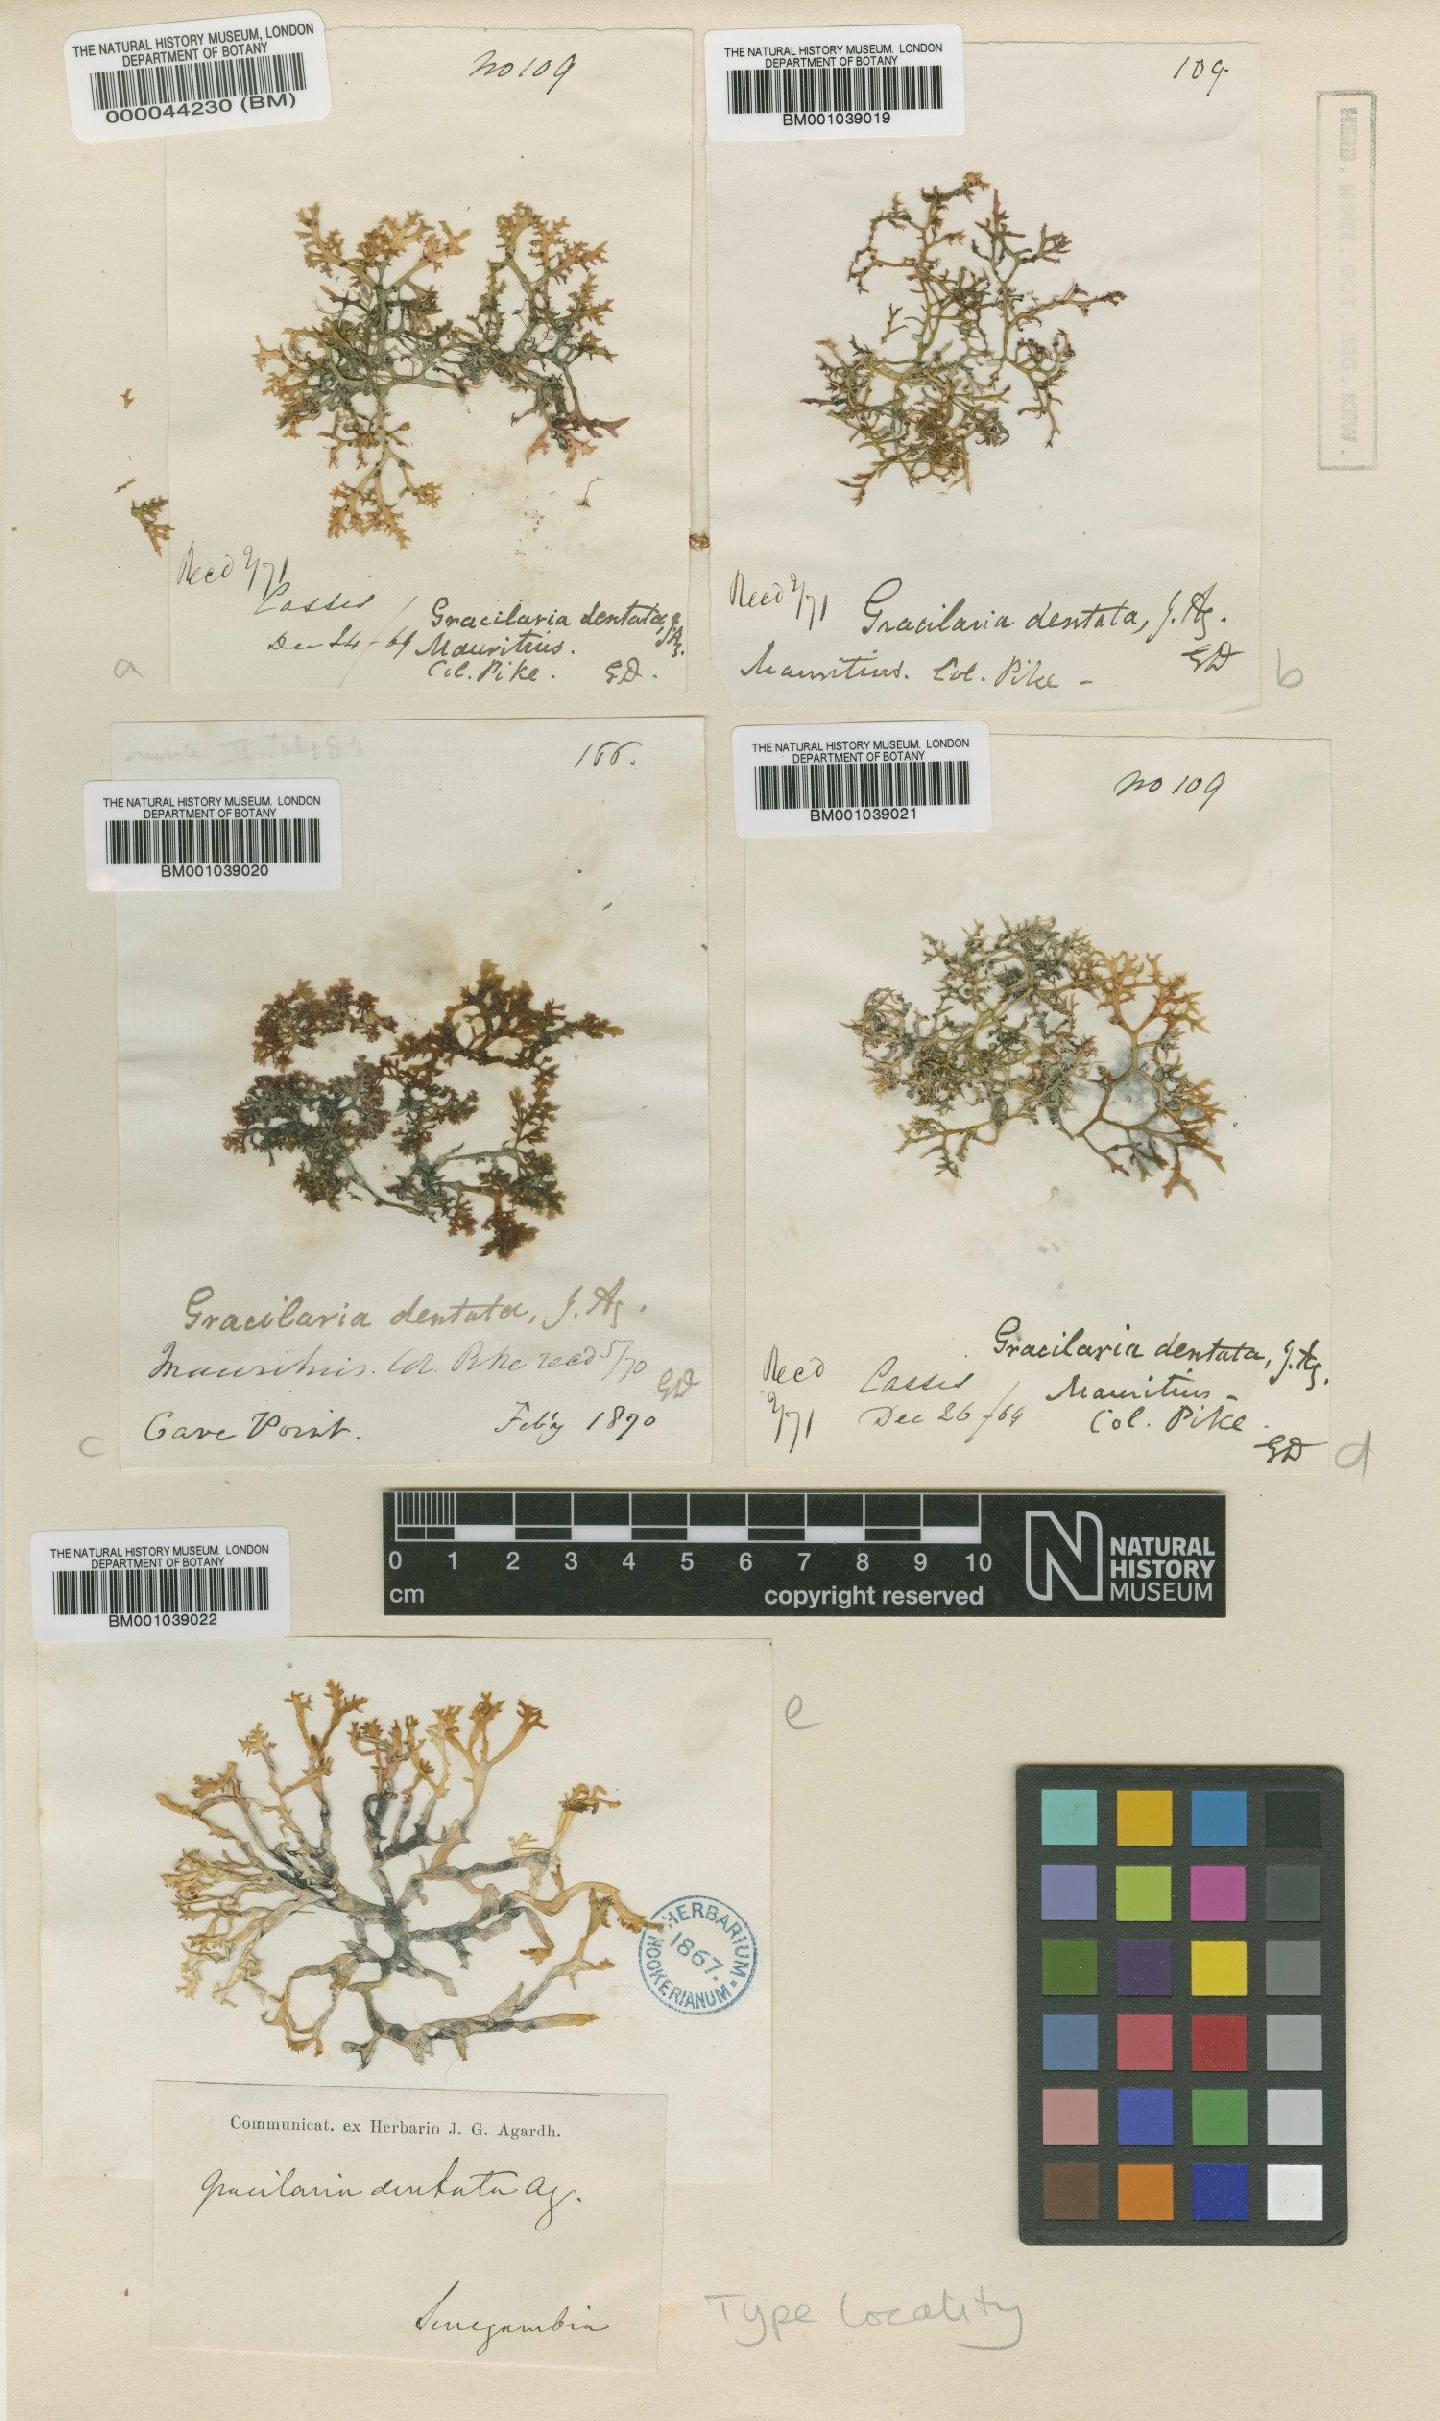 To NHMUK collection (Gracilaria dentata J.Agardh; TYPE; NHMUK:ecatalogue:703484)